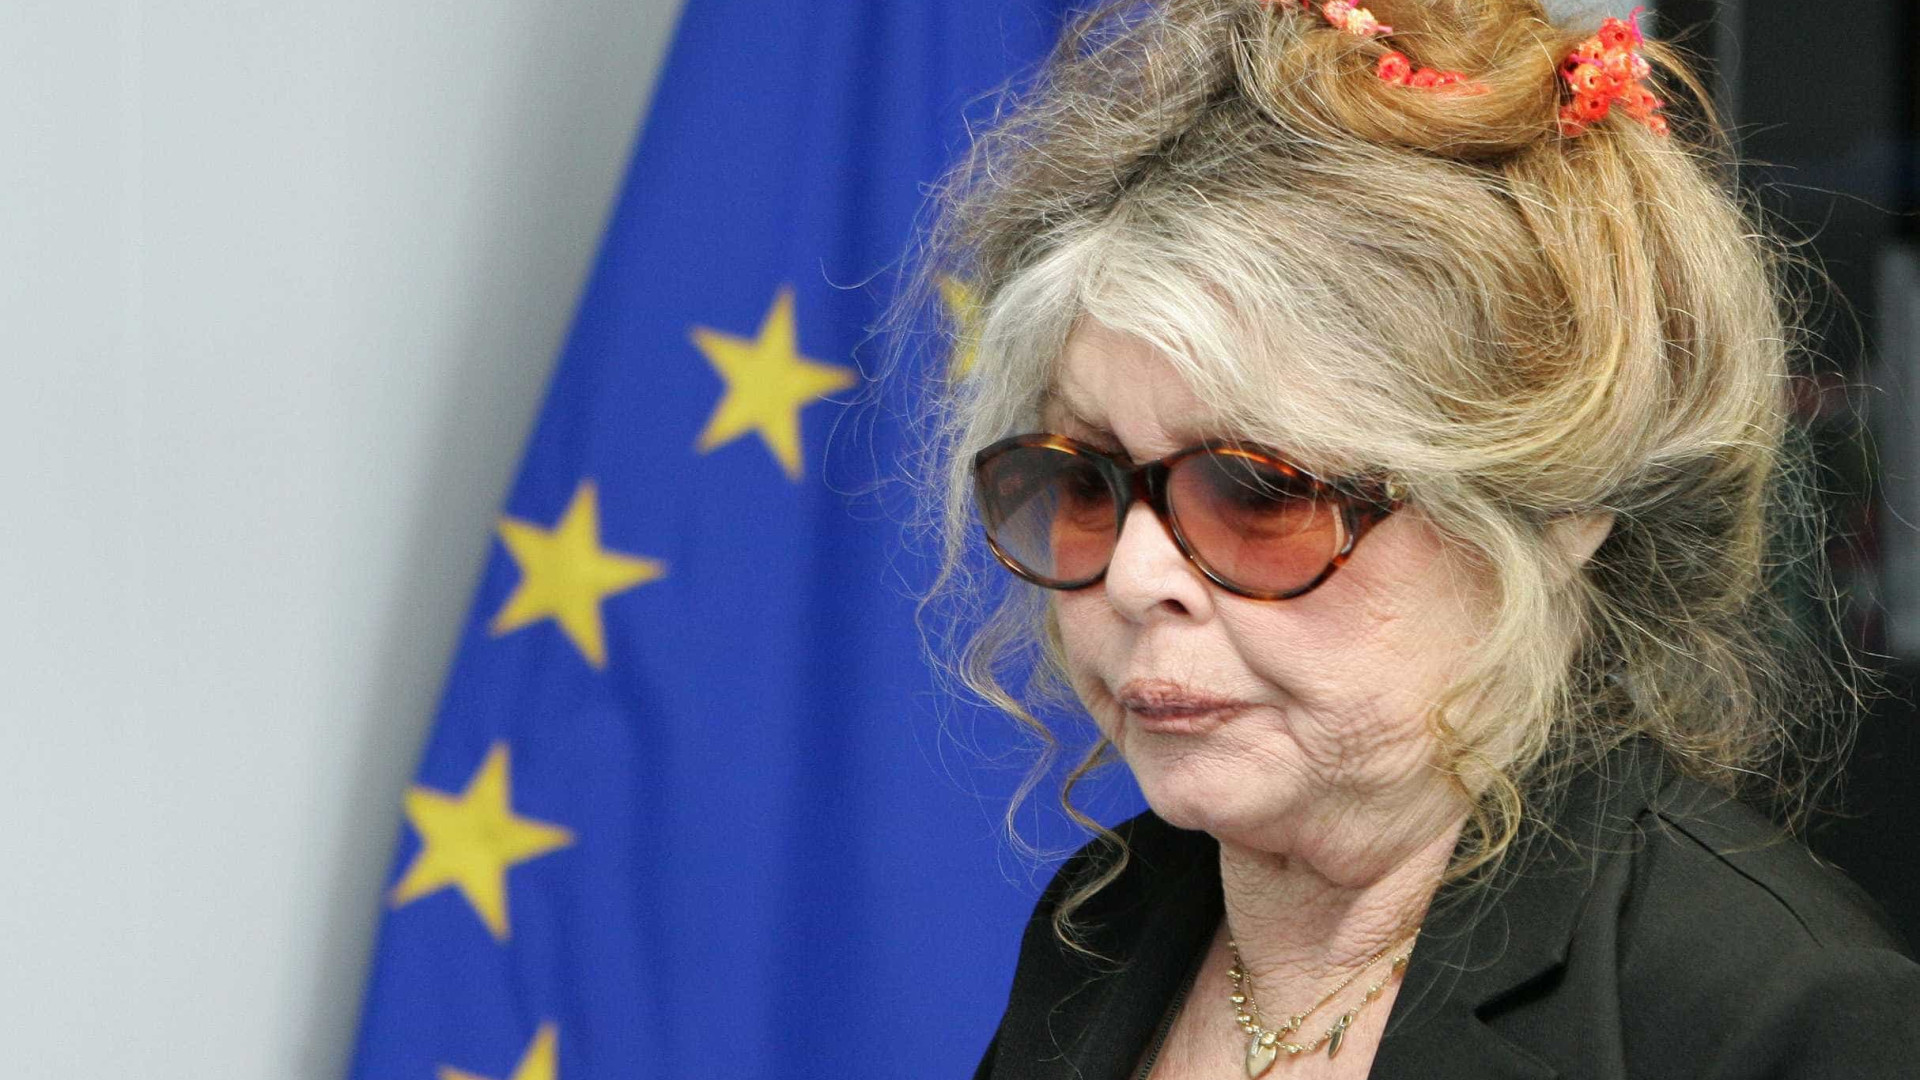 Brigitte Bardot terá de pagar multa de R$ 130 mil por insultos racistas